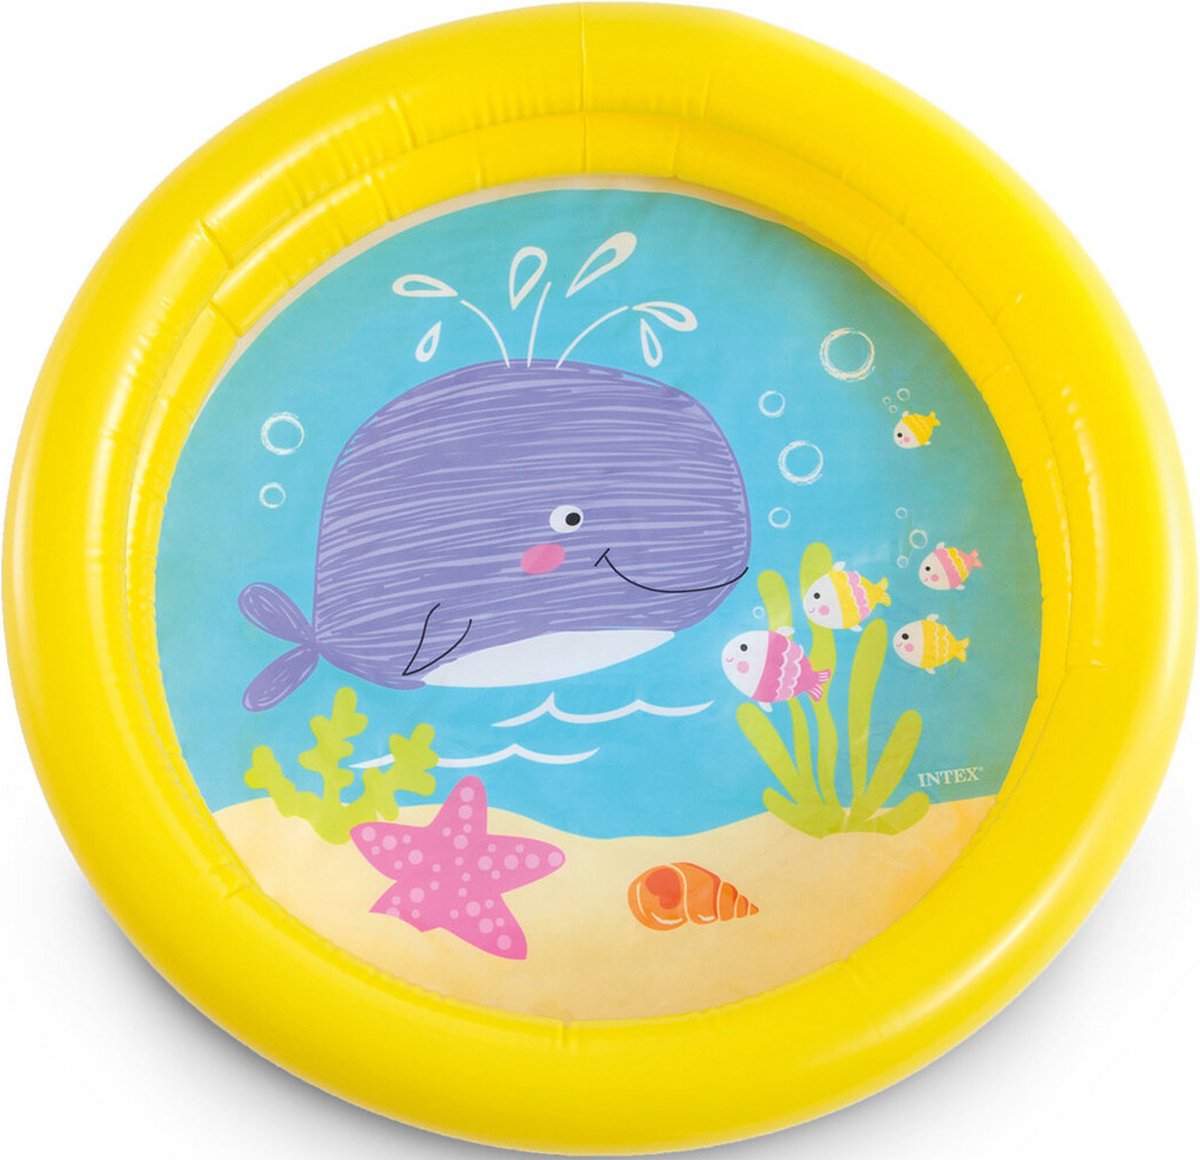 Intex kinder opblaas zwembad - geel - 61 cm - voor dreumesen/peuters